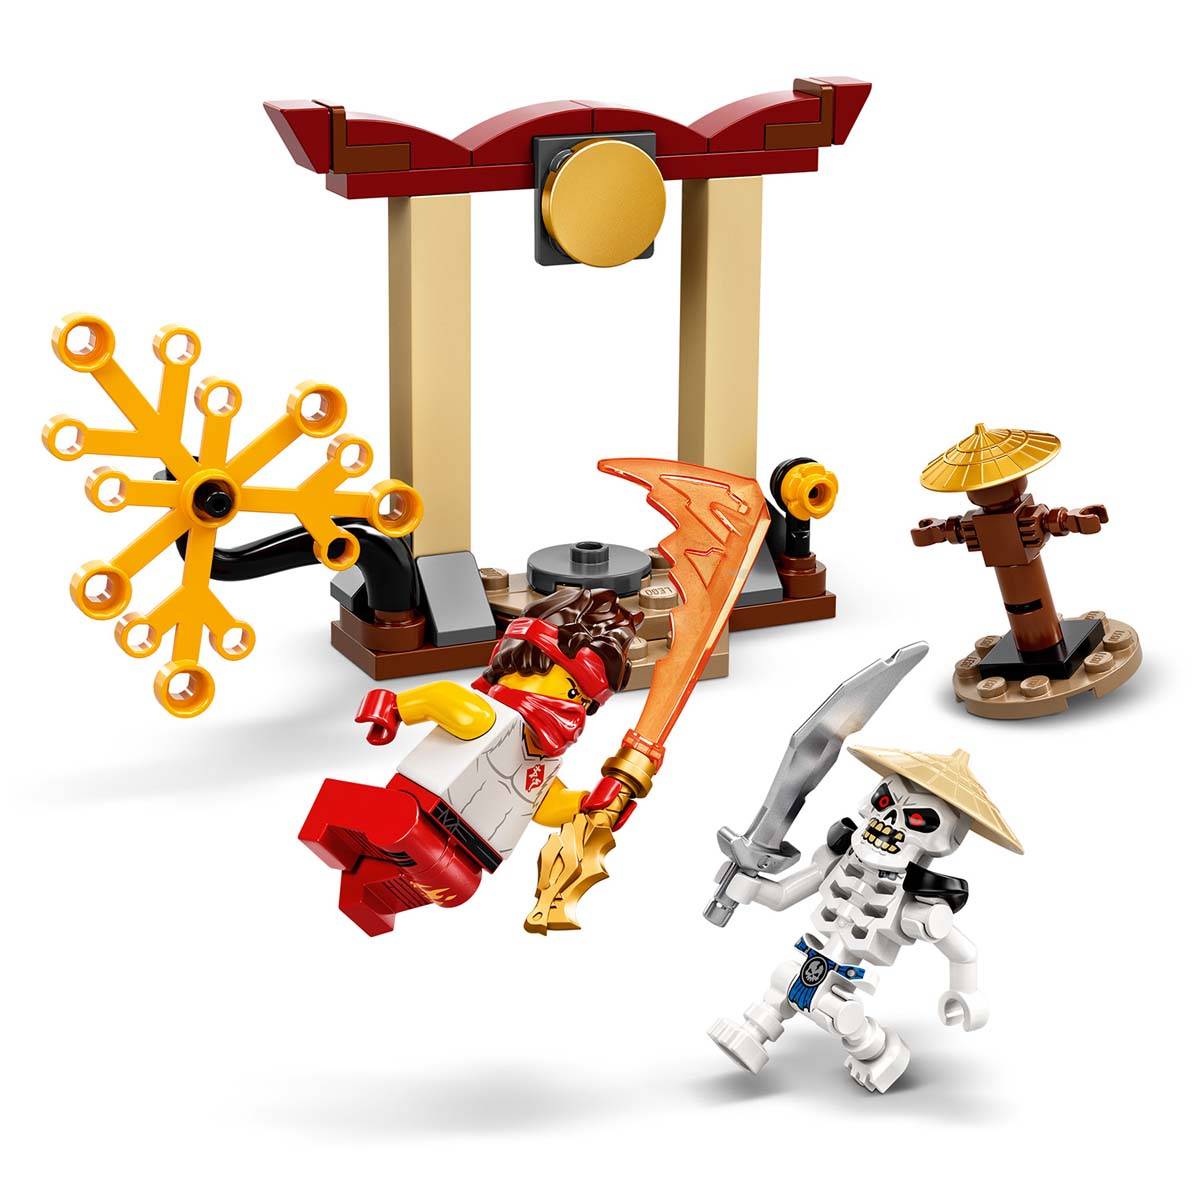 LEGO NINJAGO Epicki zestaw bojowy Kai kontra Szkielet 71730